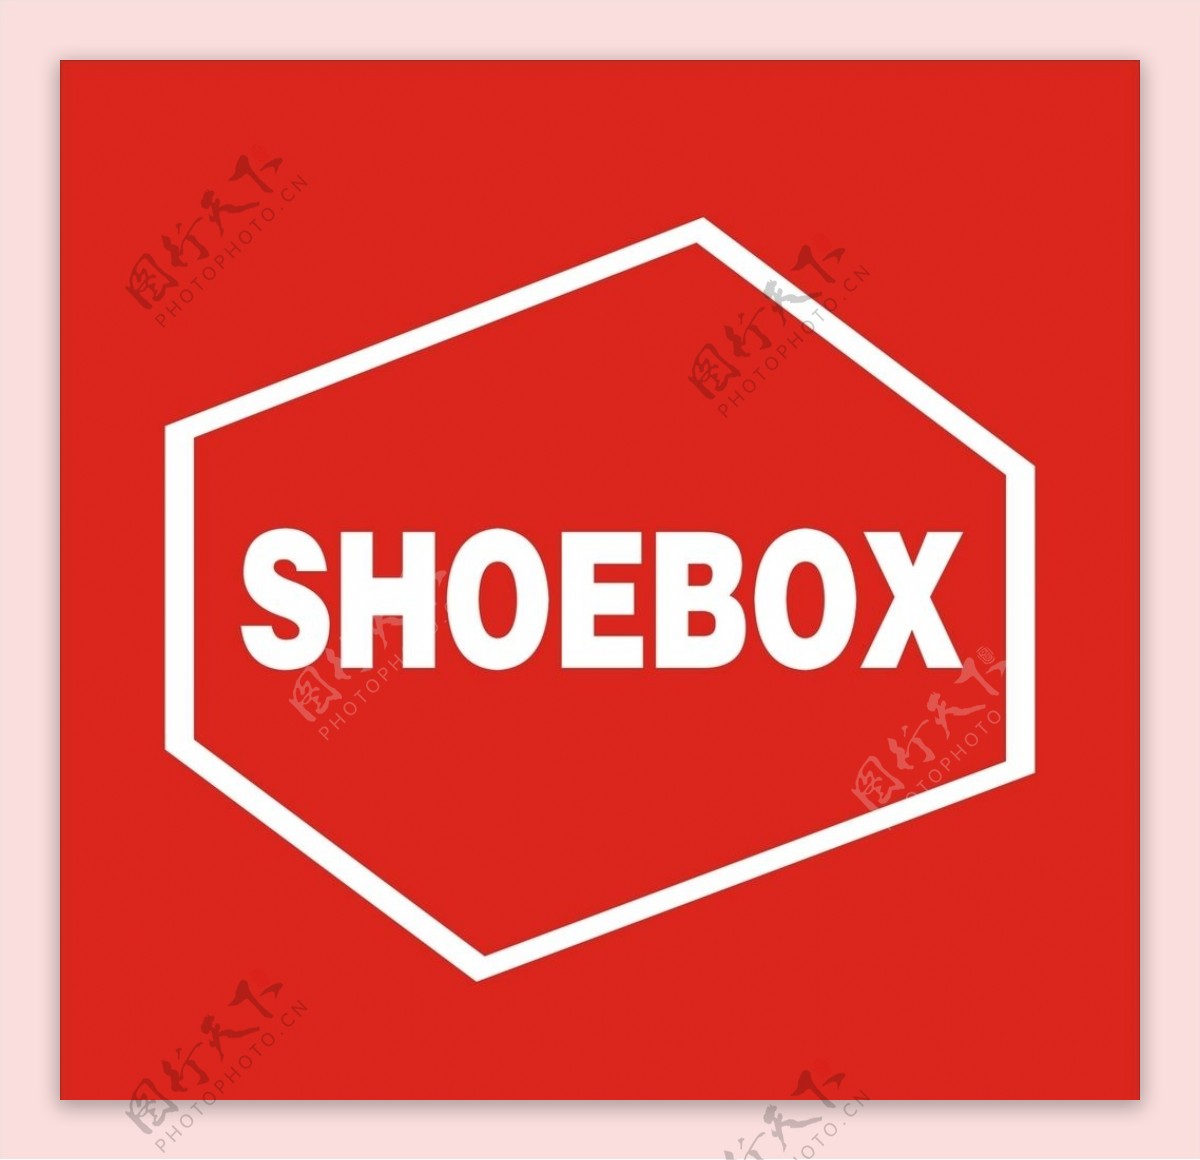 鞋柜shoebox新logo